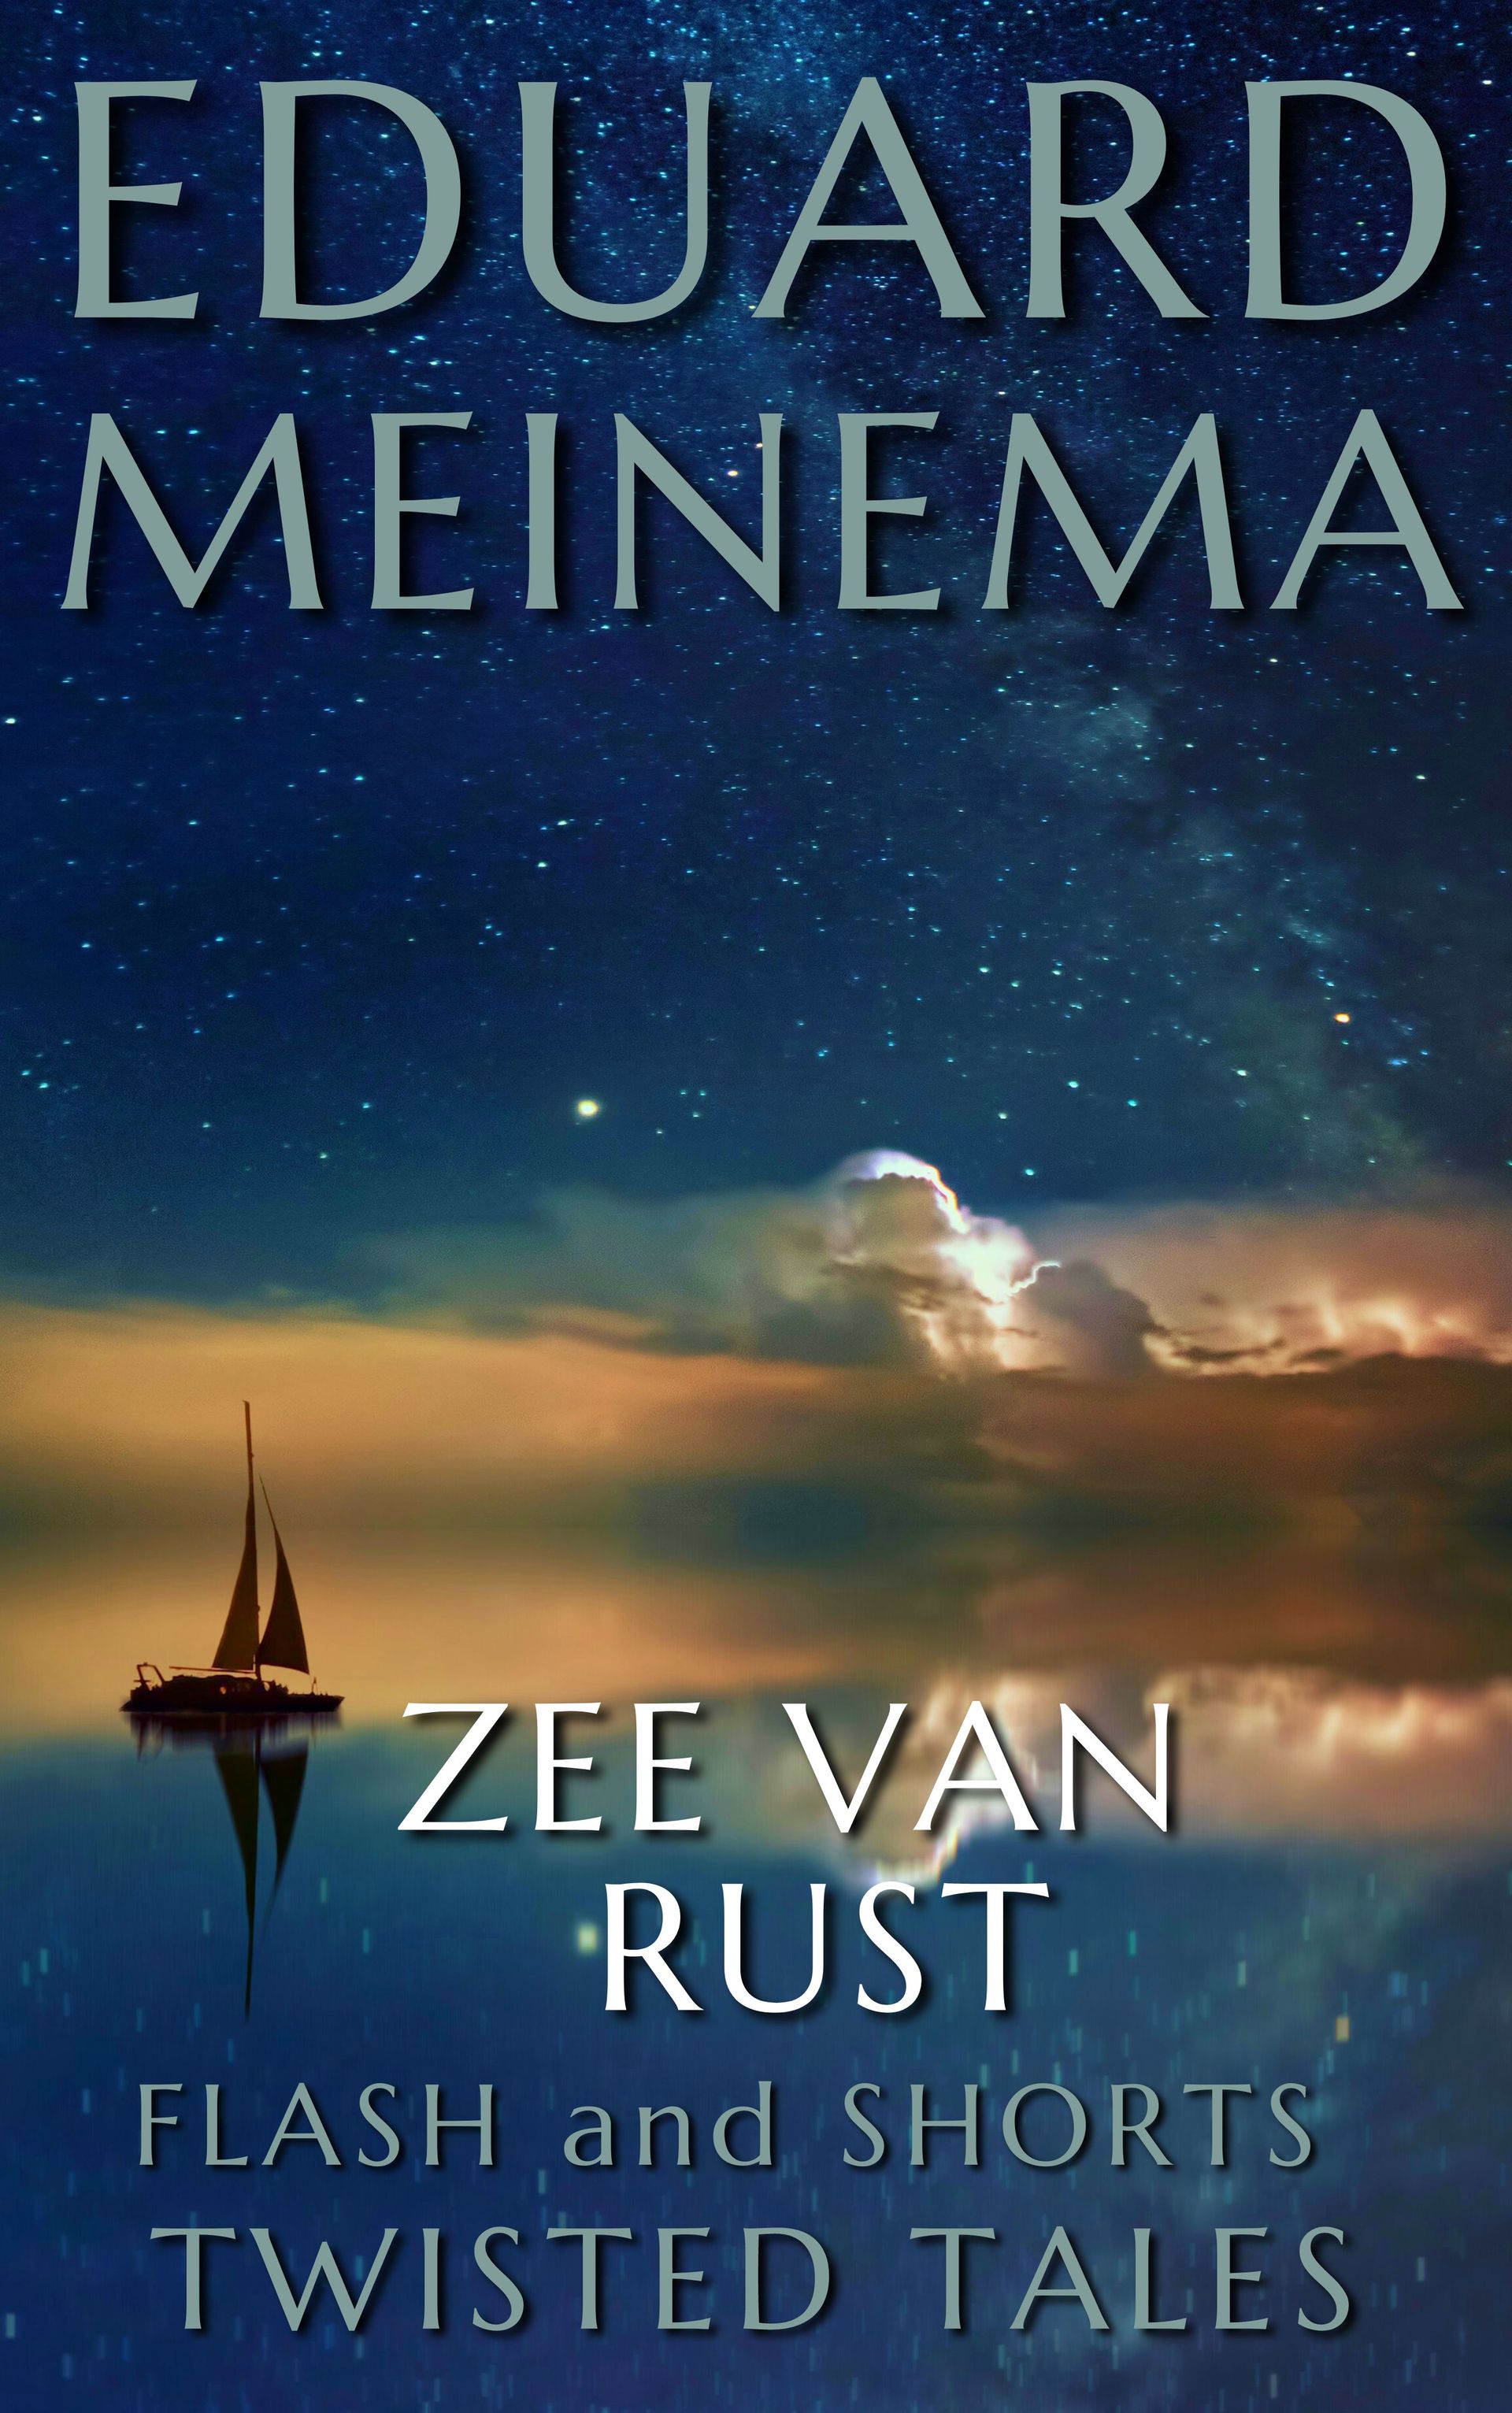 Zee van rust, een Flash Fiction verhaal van Eduard Meinema.